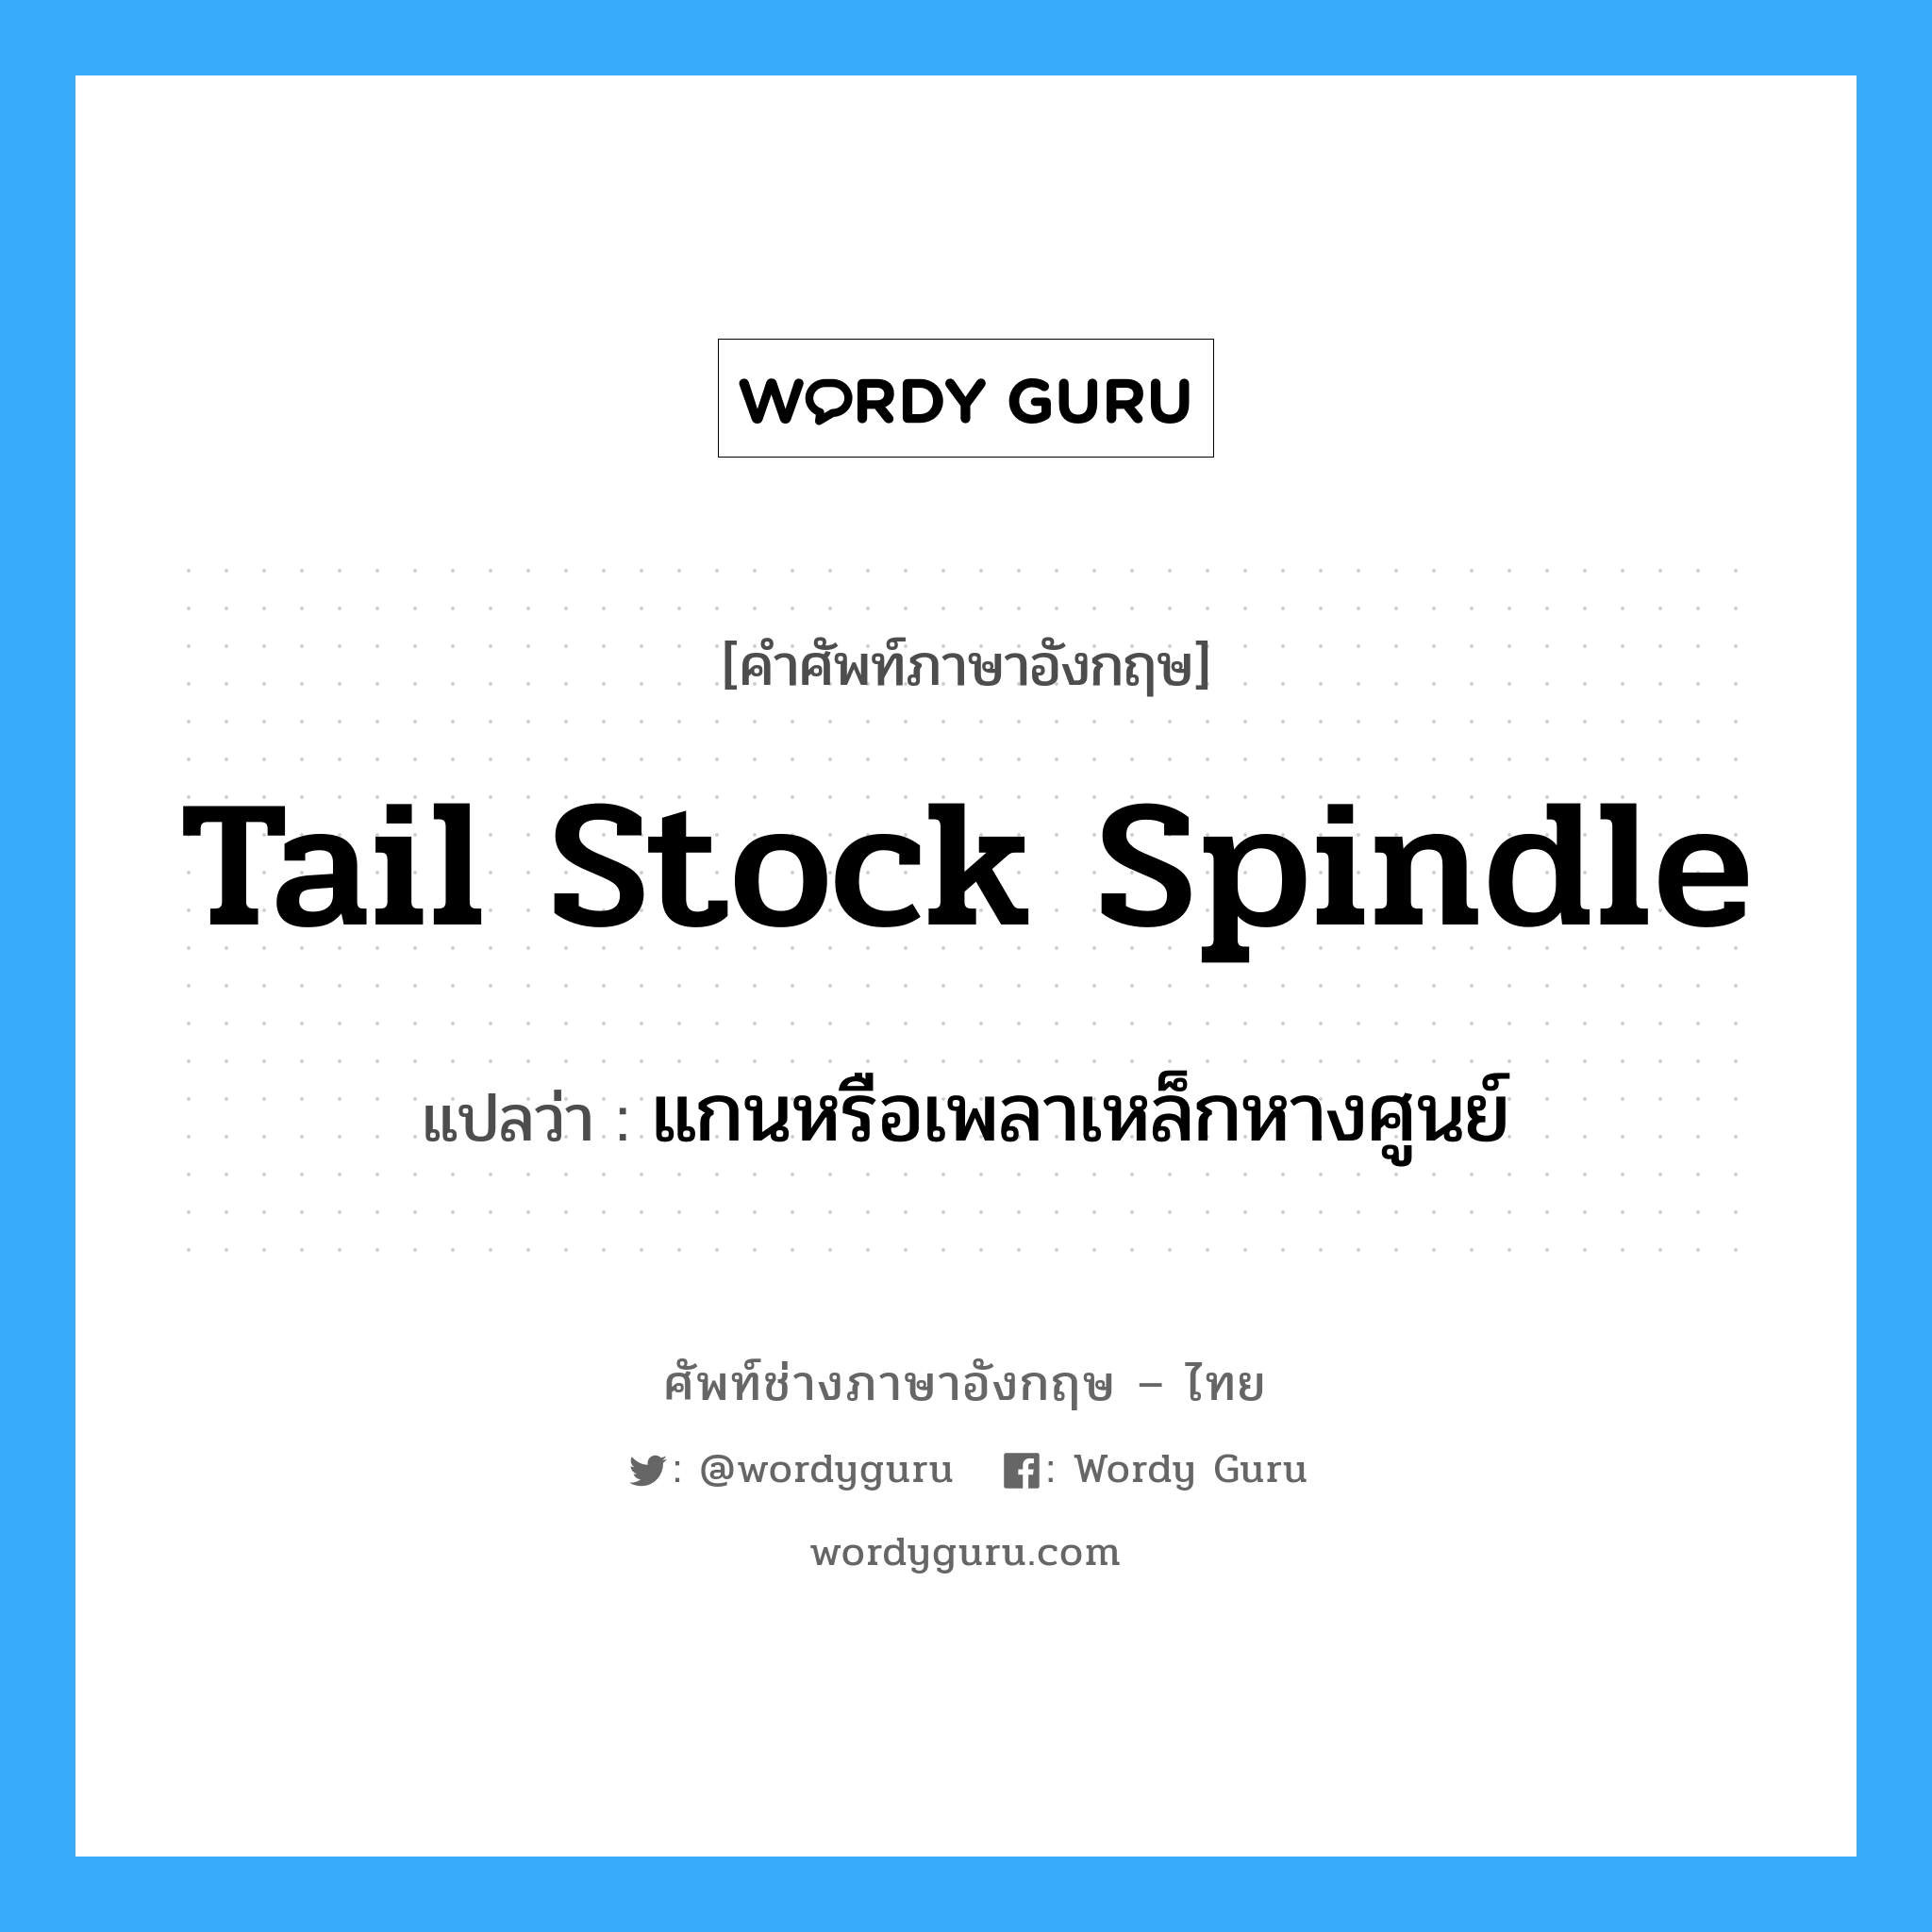 แกนหรือเพลาเหล็กหางศูนย์ ภาษาอังกฤษ?, คำศัพท์ช่างภาษาอังกฤษ - ไทย แกนหรือเพลาเหล็กหางศูนย์ คำศัพท์ภาษาอังกฤษ แกนหรือเพลาเหล็กหางศูนย์ แปลว่า tail stock spindle